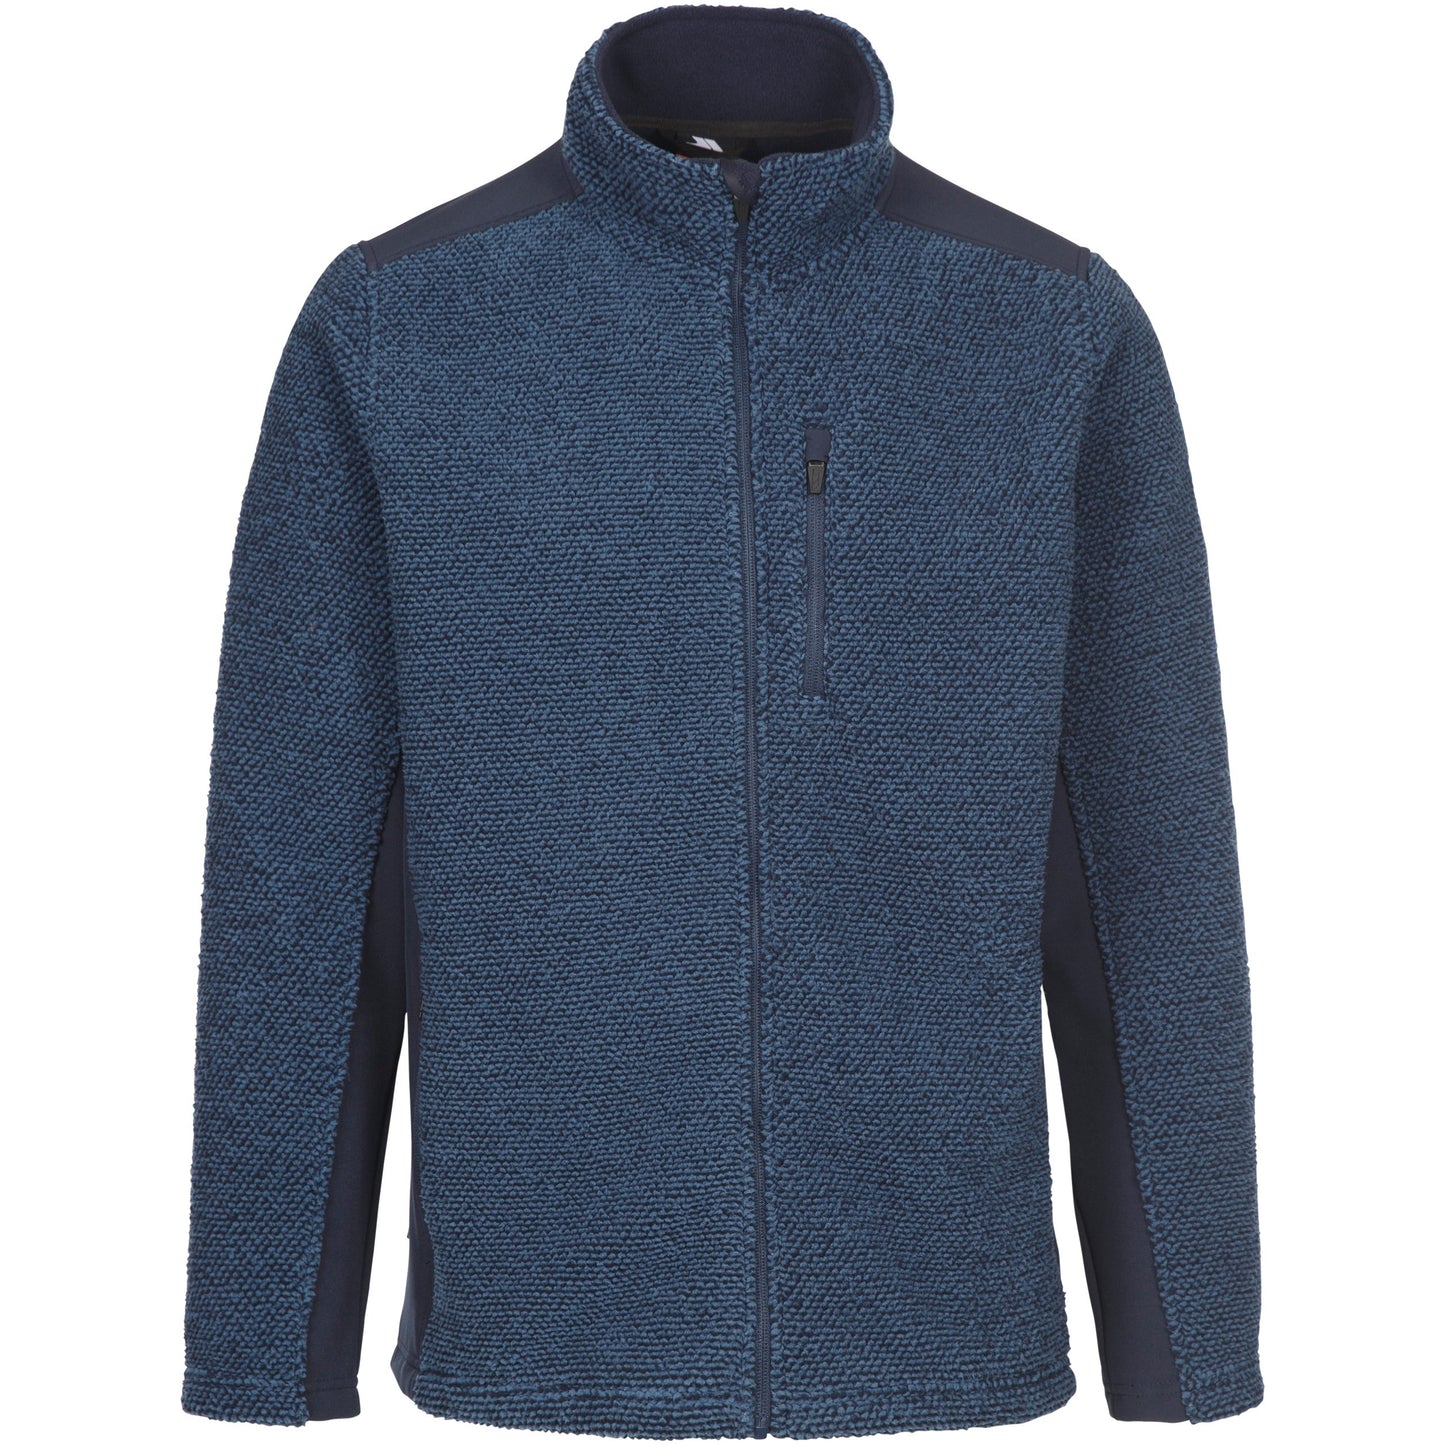 Faratino Men's Knitted Striped Fleece Jacket in Smokey Blue